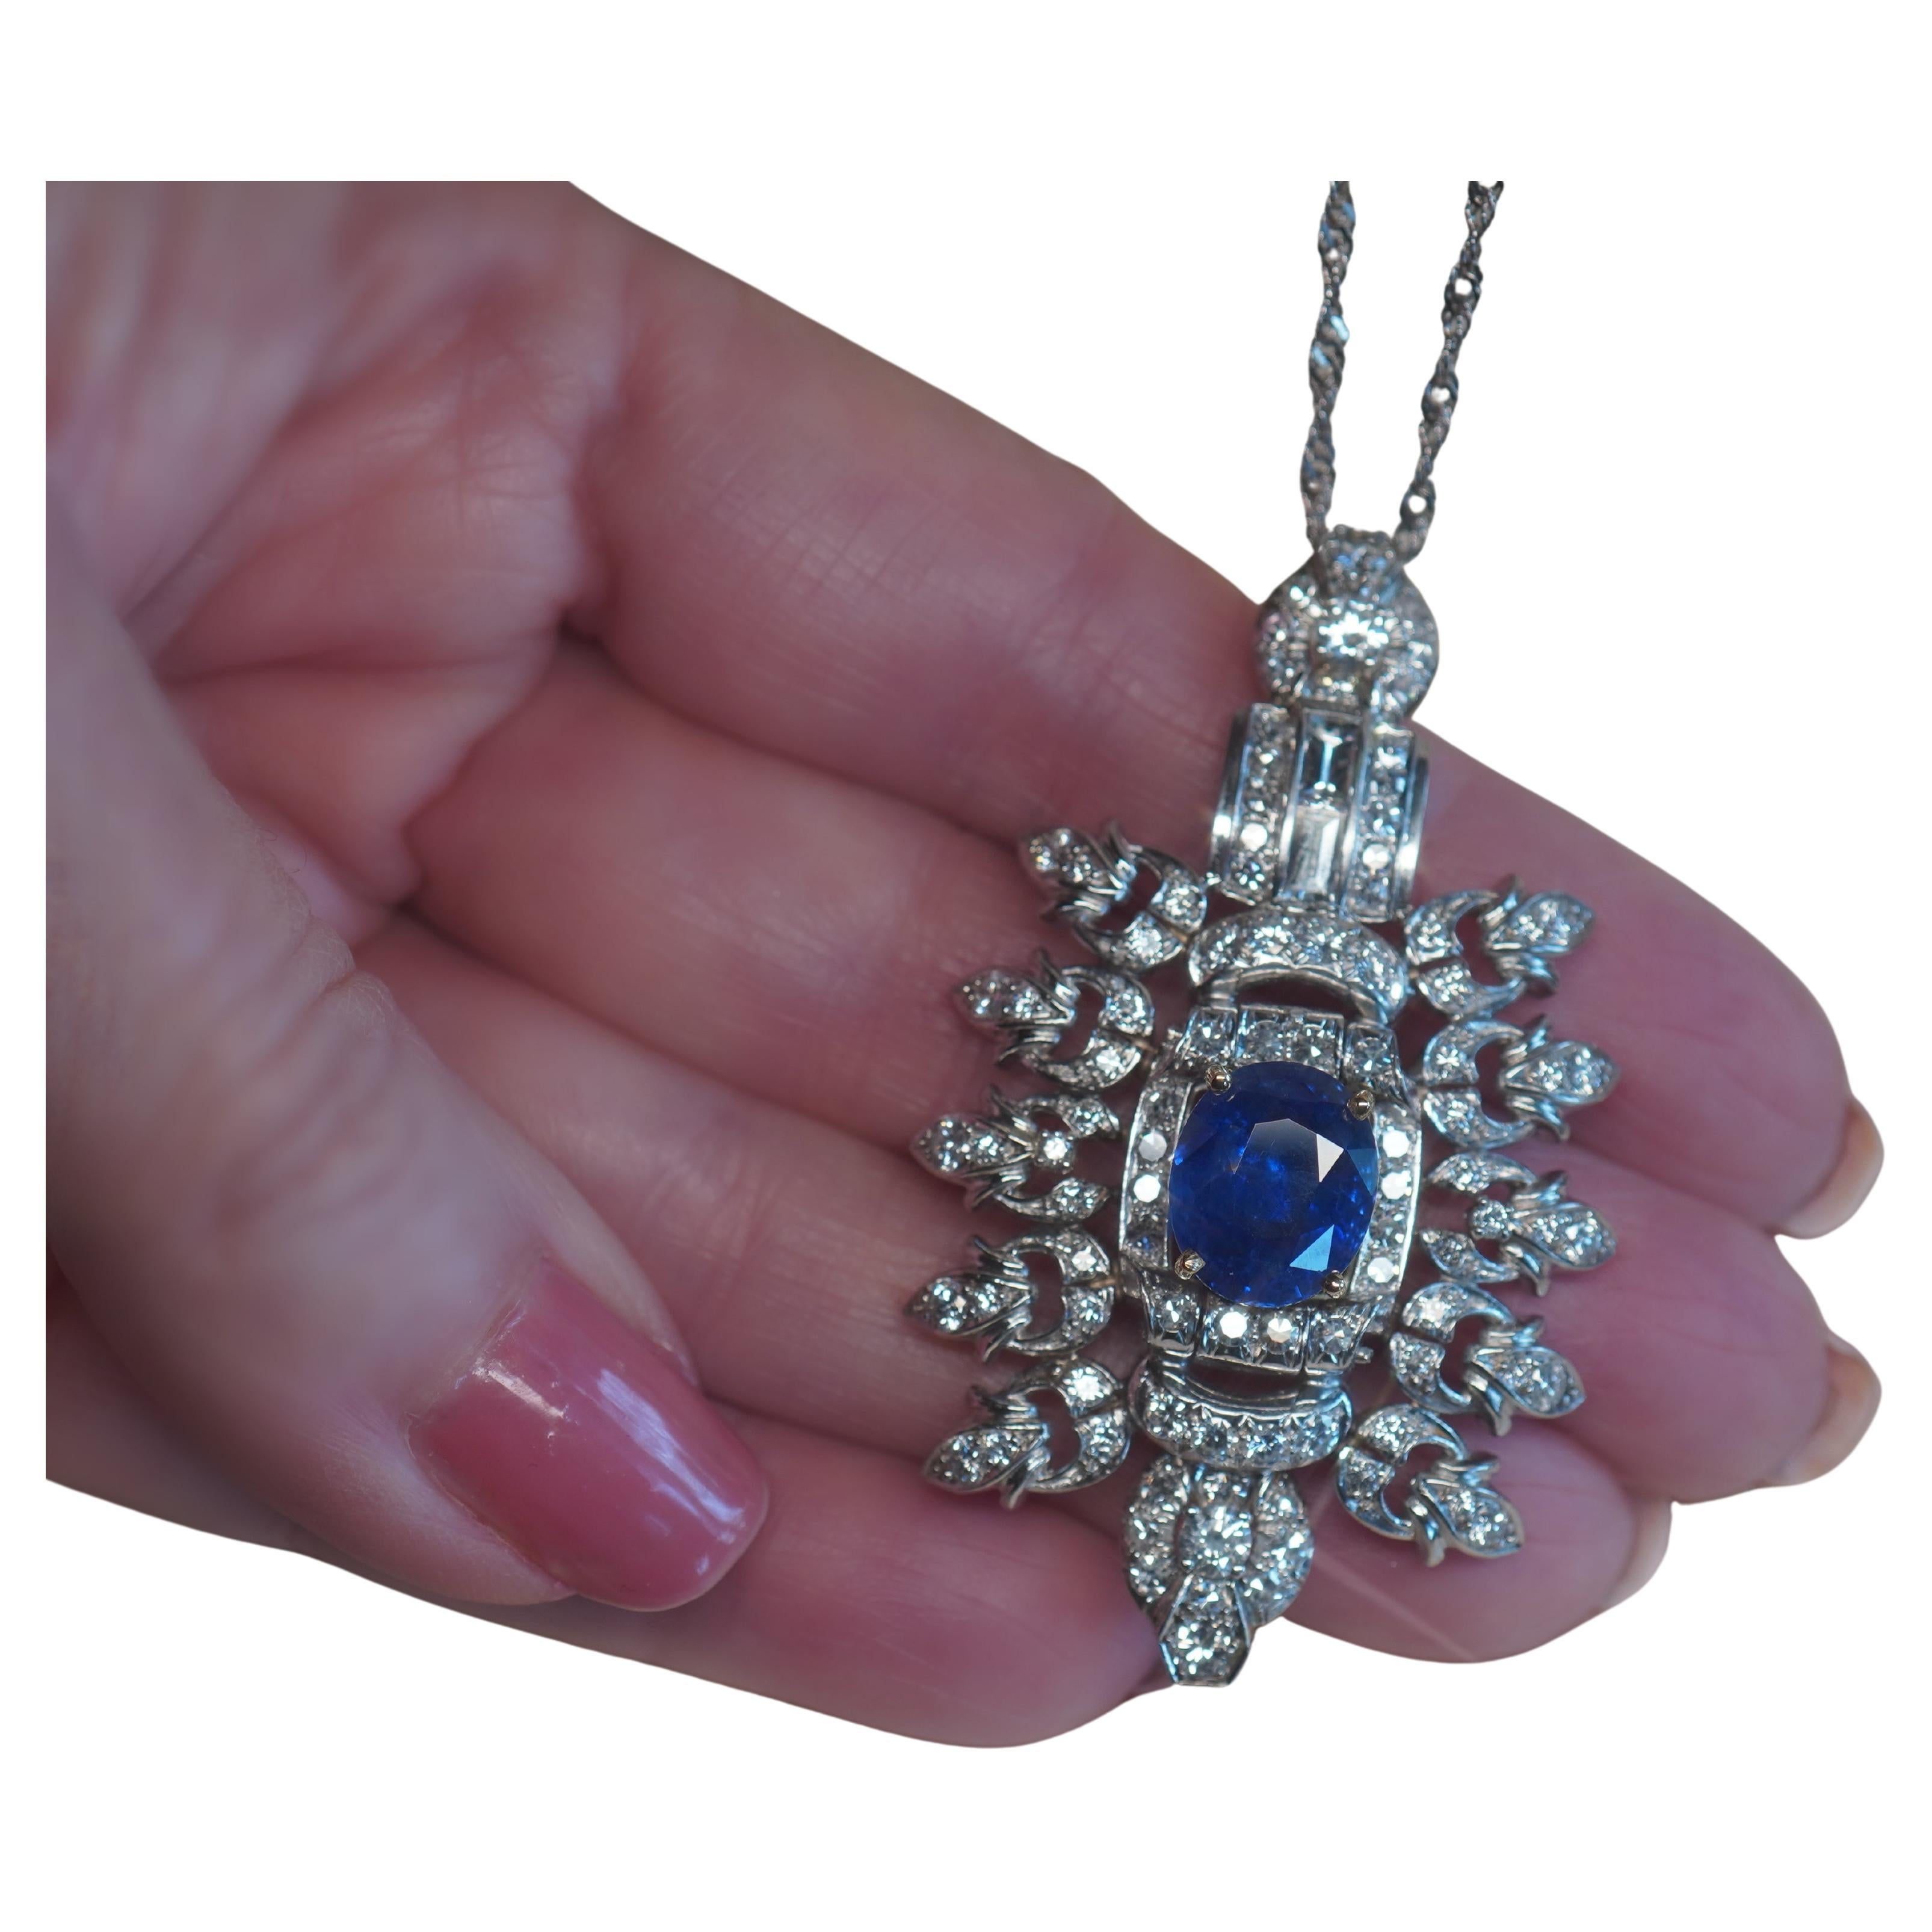 Pendentif Ceylan vintage non chauffé en platine avec saphir bleu 18 carats et diamants 11,12 carats, certifié GIA